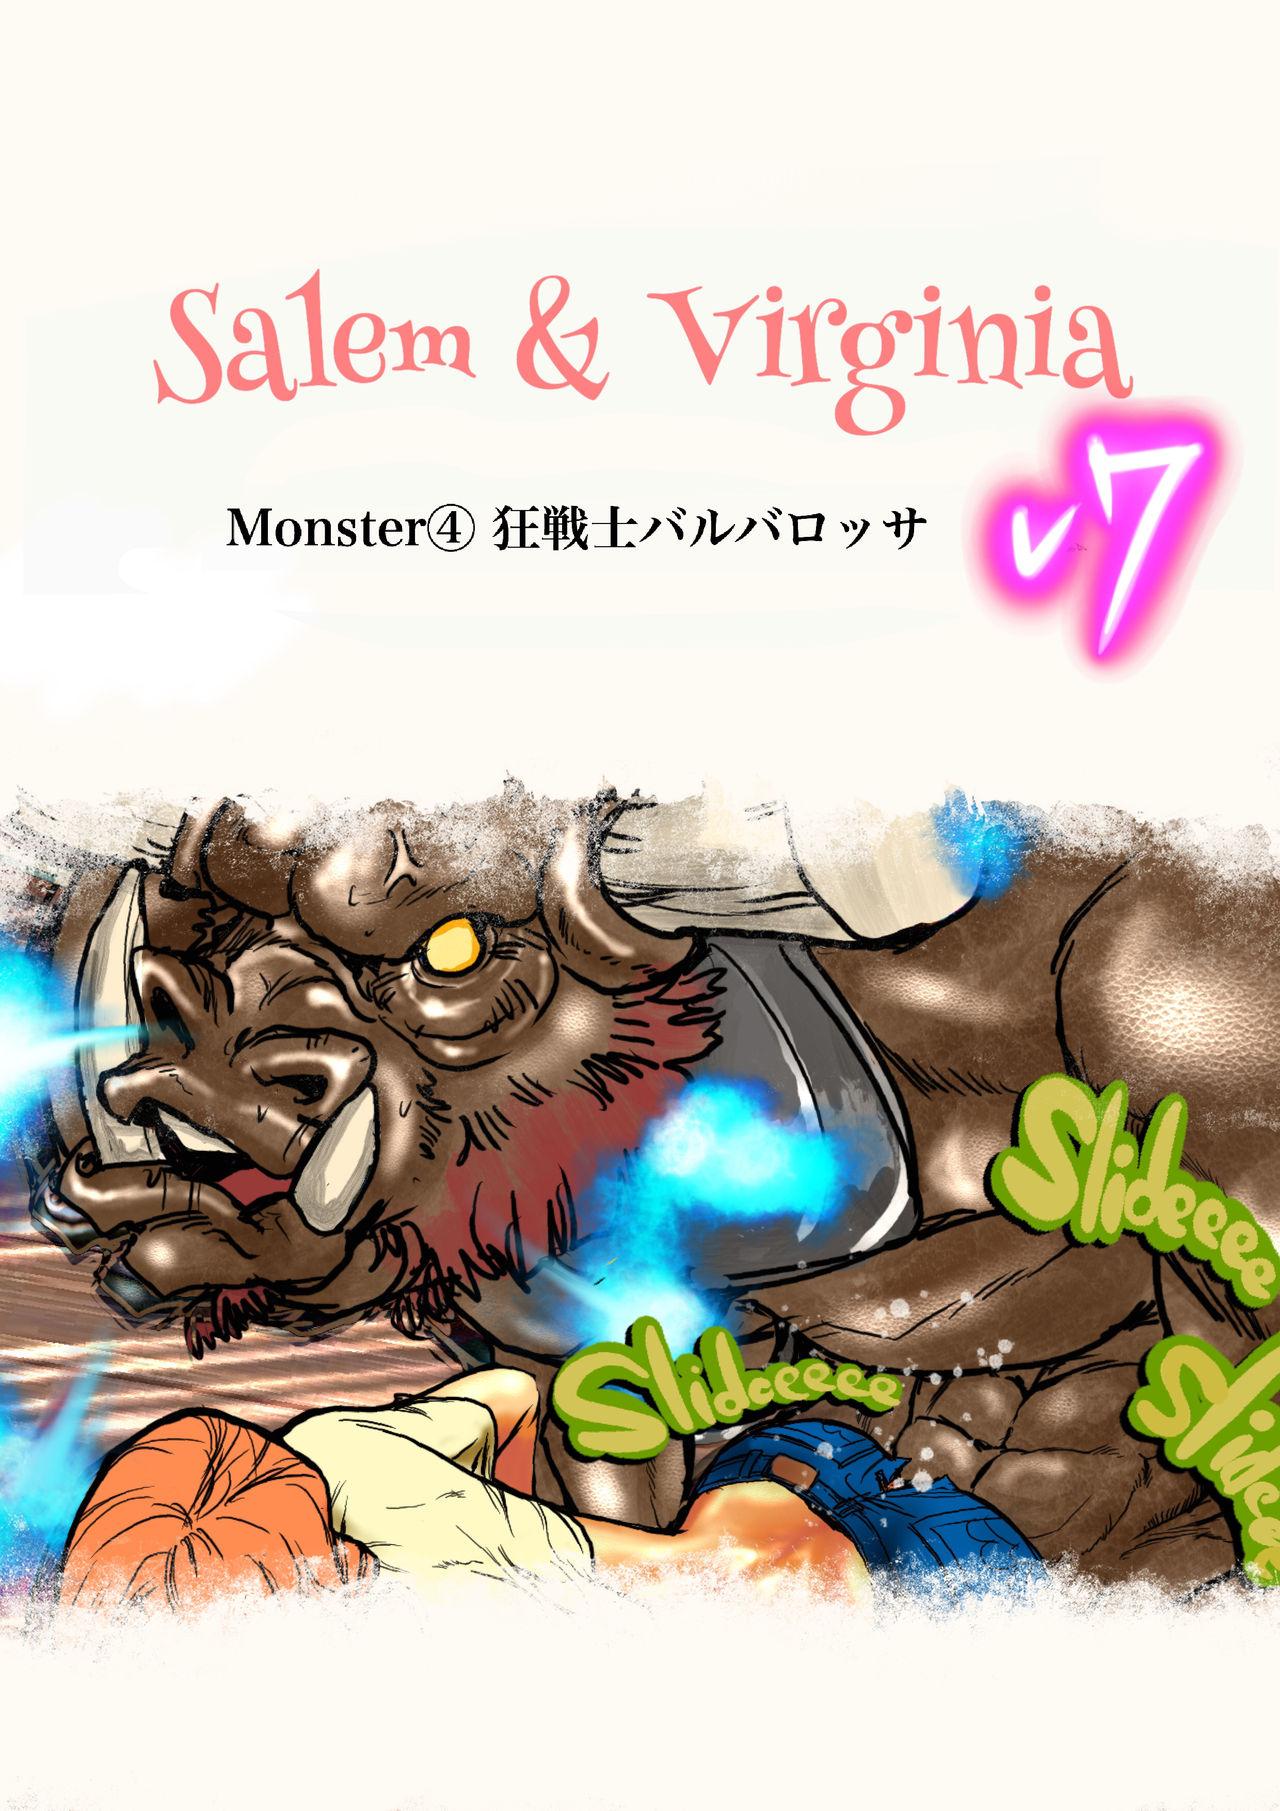 Salem & Virginia 111